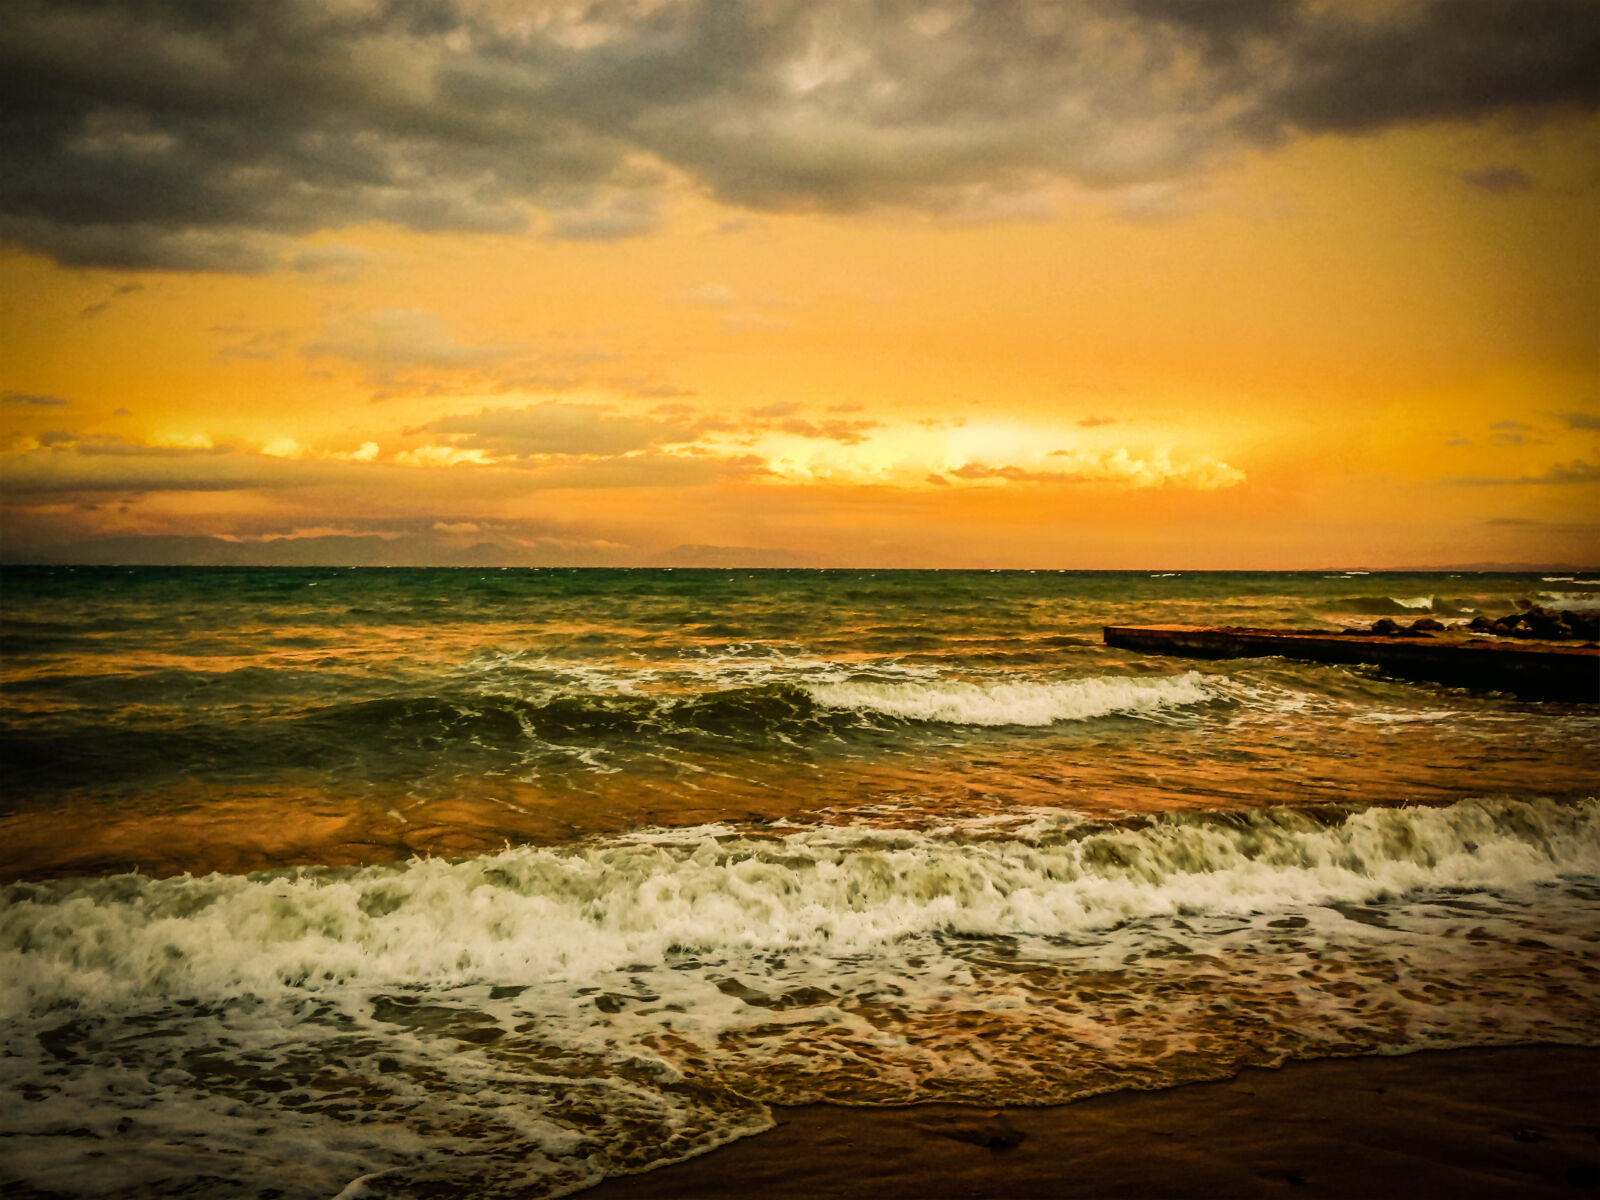 Apple iPhone 5 sample photo. Beach, dusk, evening, sky photography